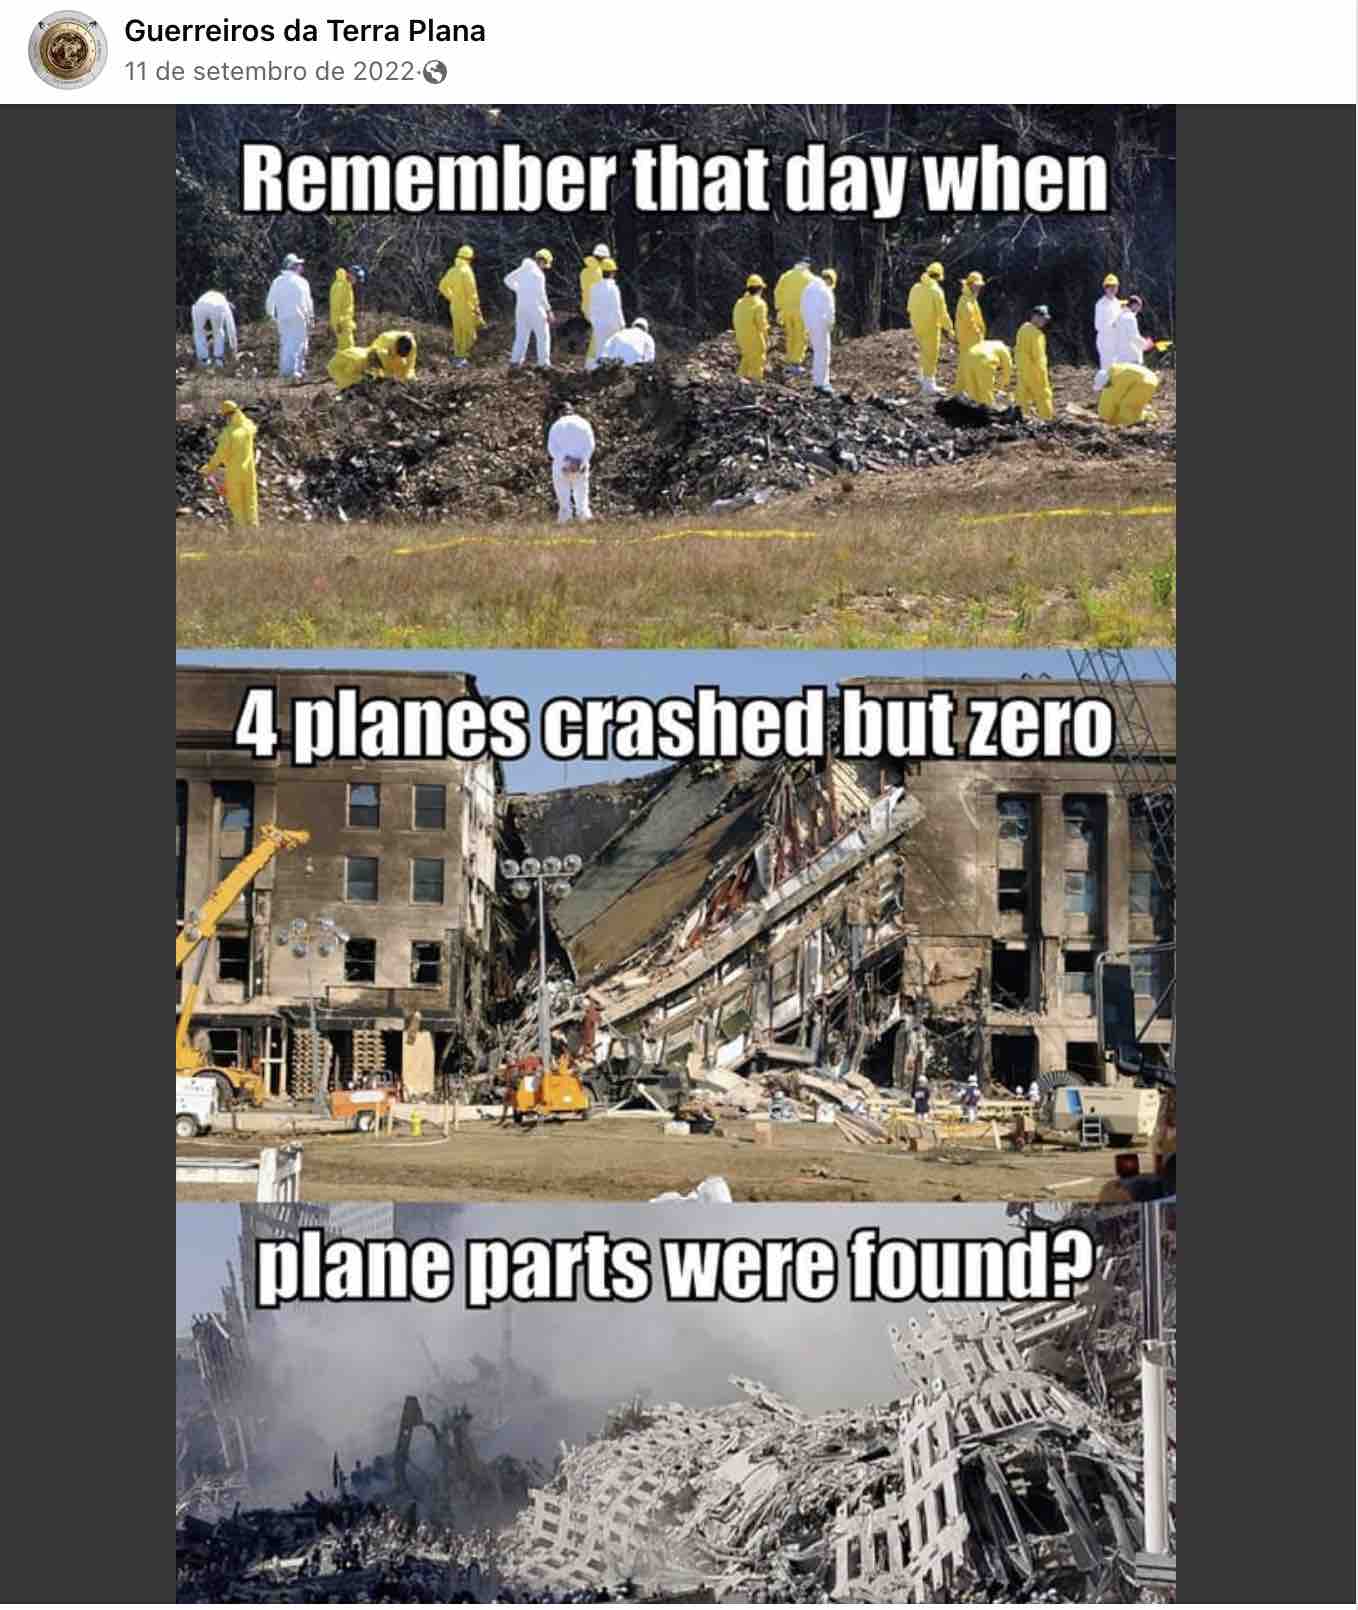 Post no Facebook com teoria conspiratória sobre o atentado às Torres Gêmeas em Nova York em 11/9 de 2001. 